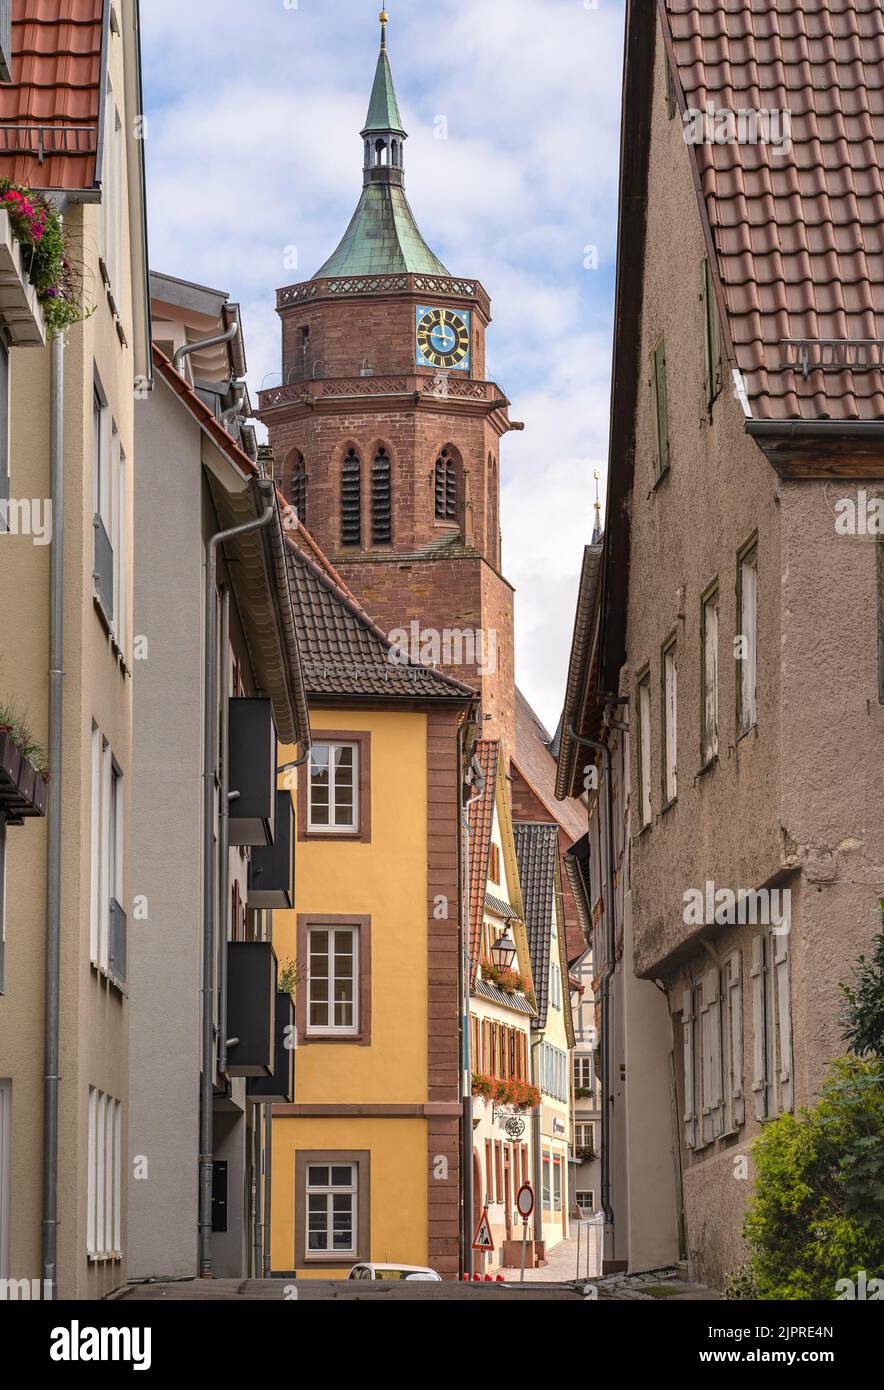 Vue sur le tunnel de l'église par une allée de maisons à colombages, Weil der Stadt, Allemagne Banque D'Images